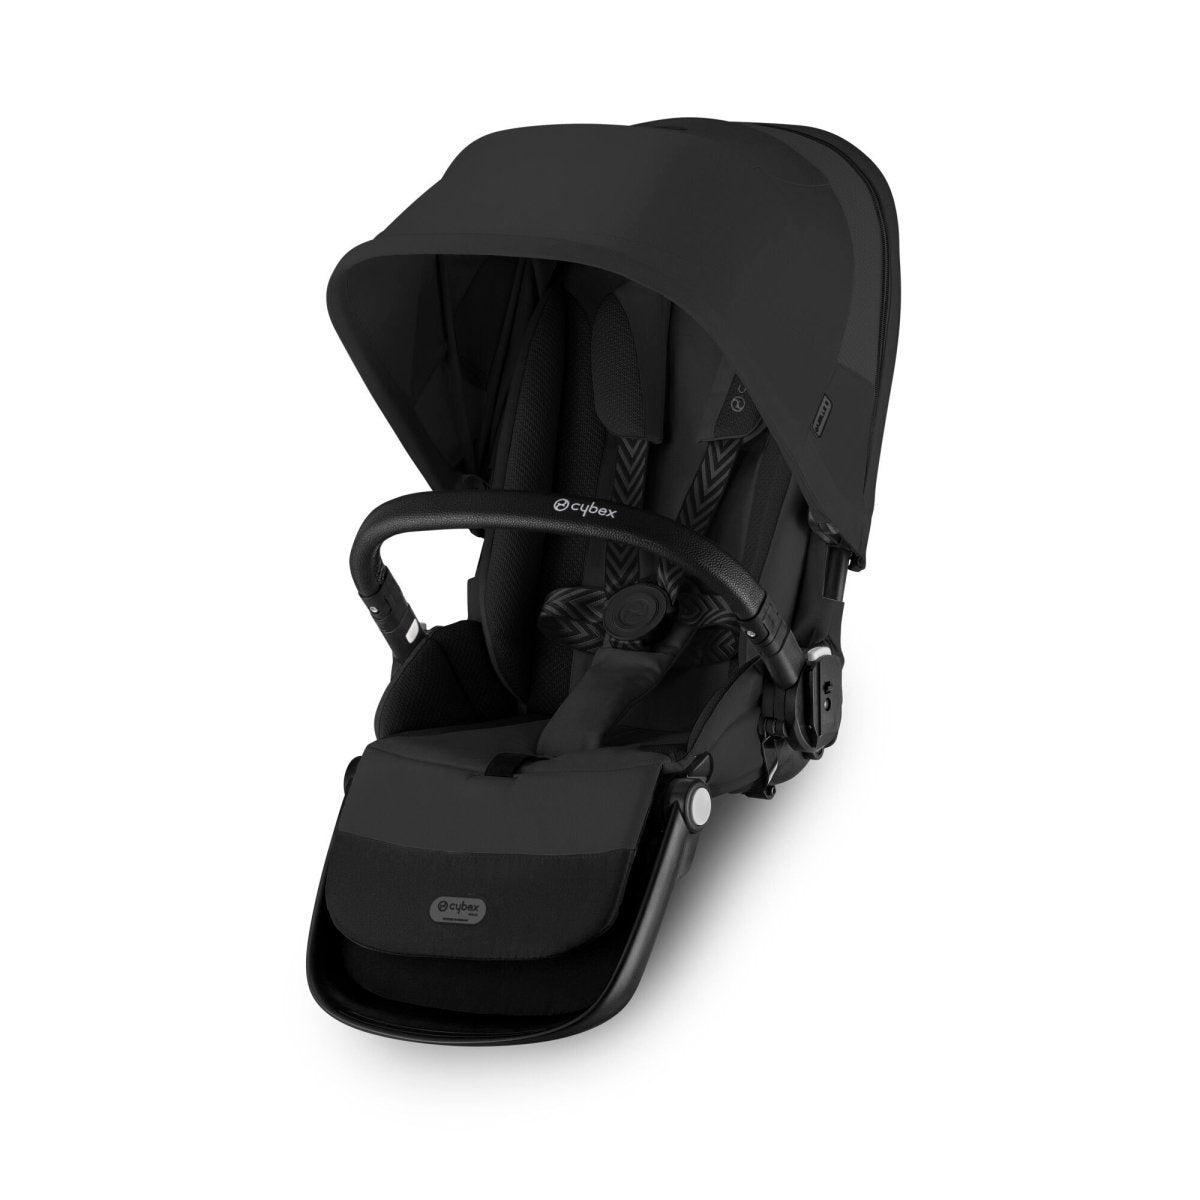 Asiento complementario Gazelle S "One Pull" [NUEVO] - Cybex-MiniNuts expertos en coches y sillas de auto para bebé